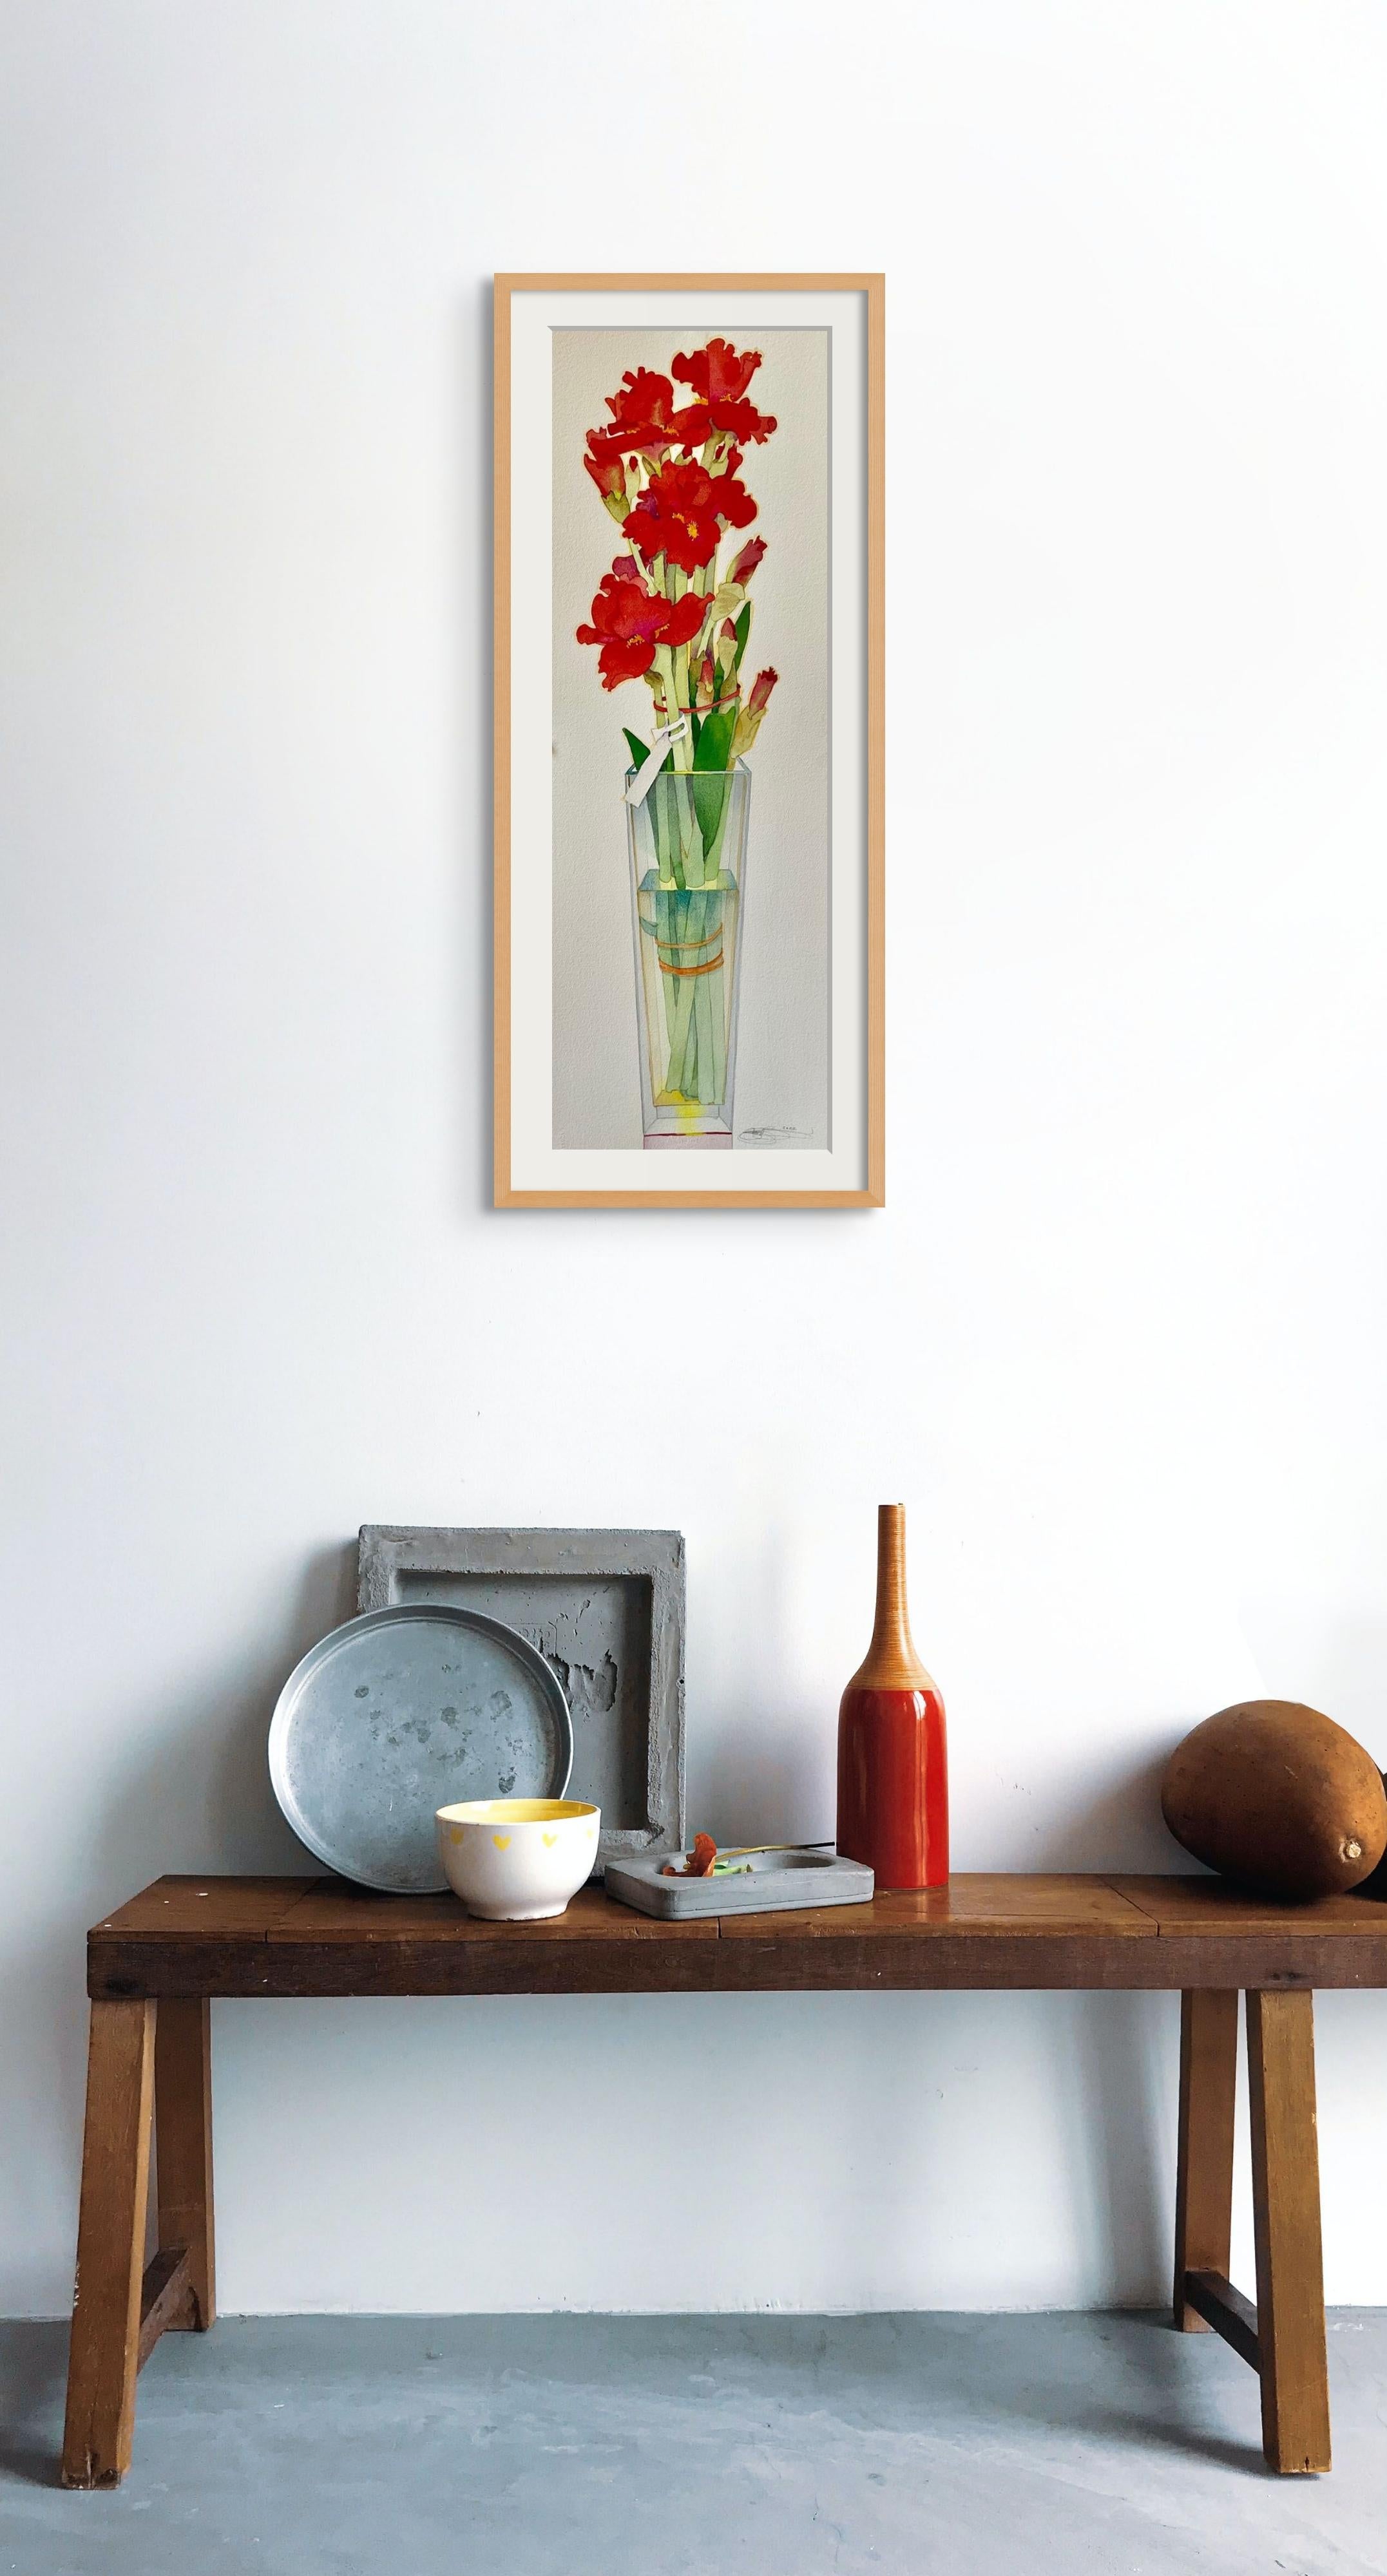 Red Iris - Art by Gary Bukovnik